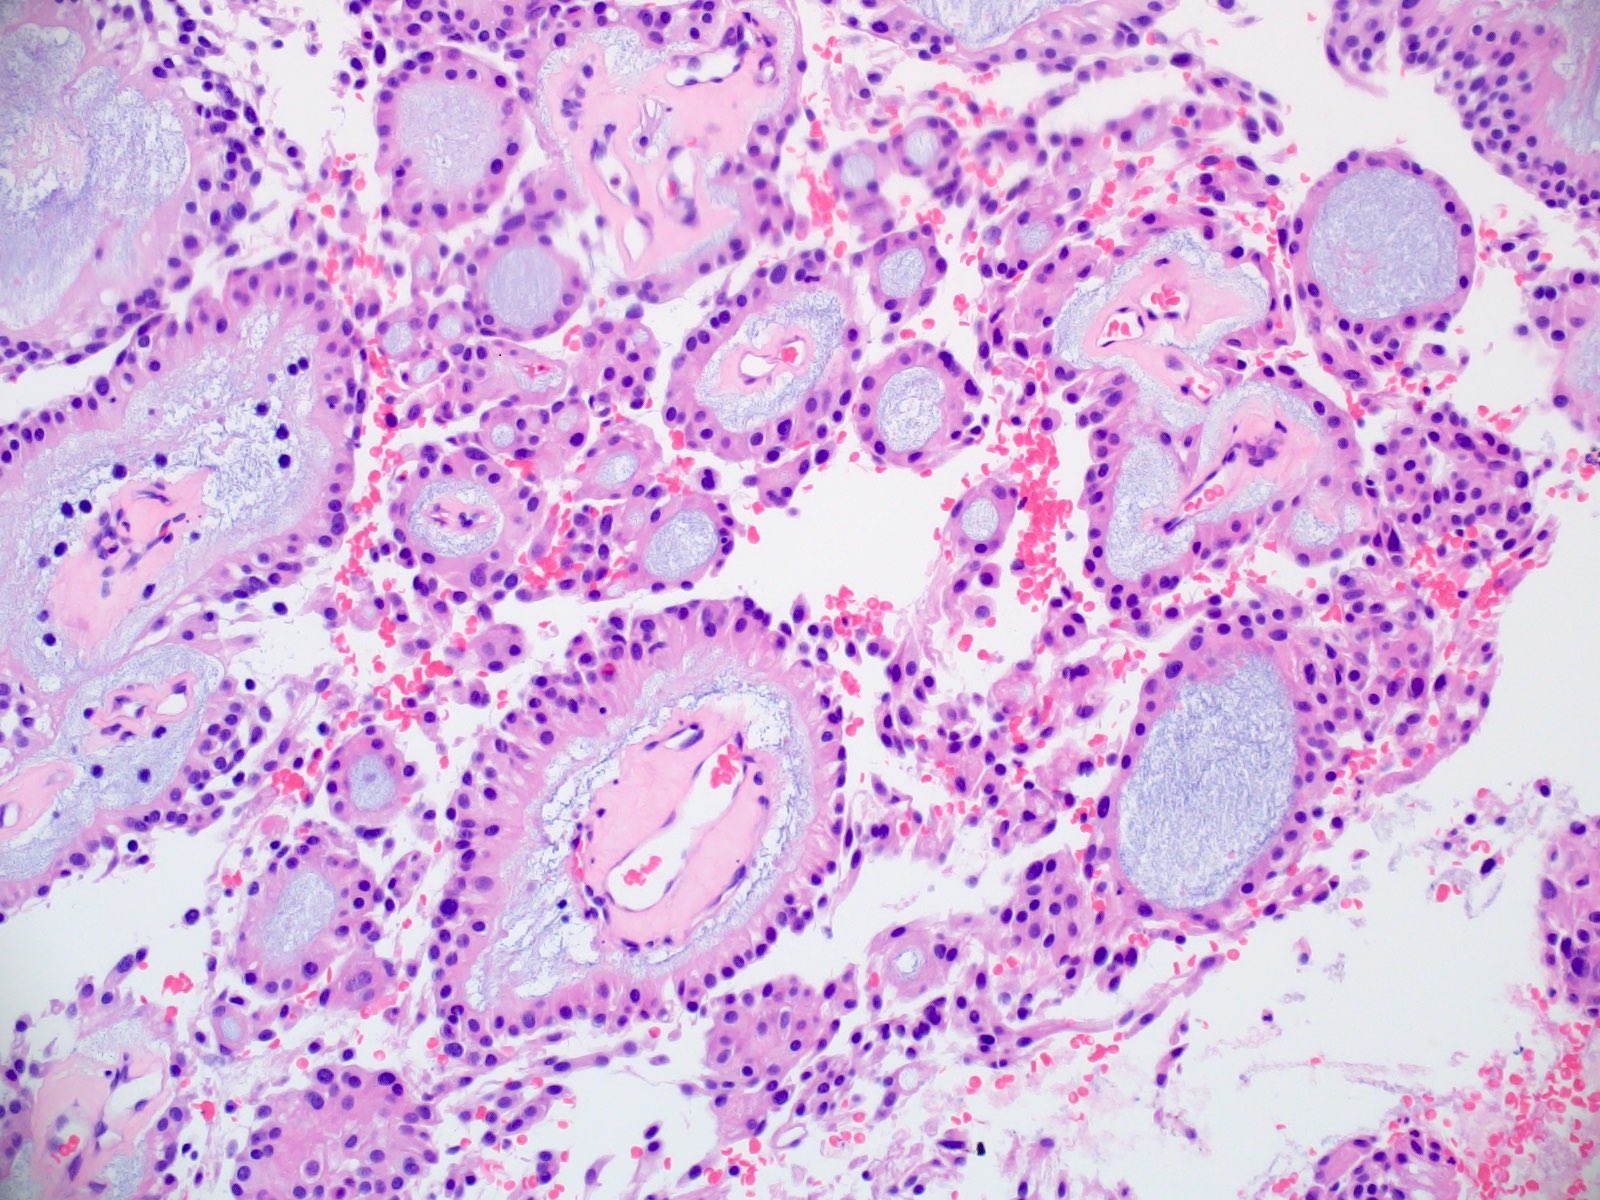 Epithelioid tumor cells